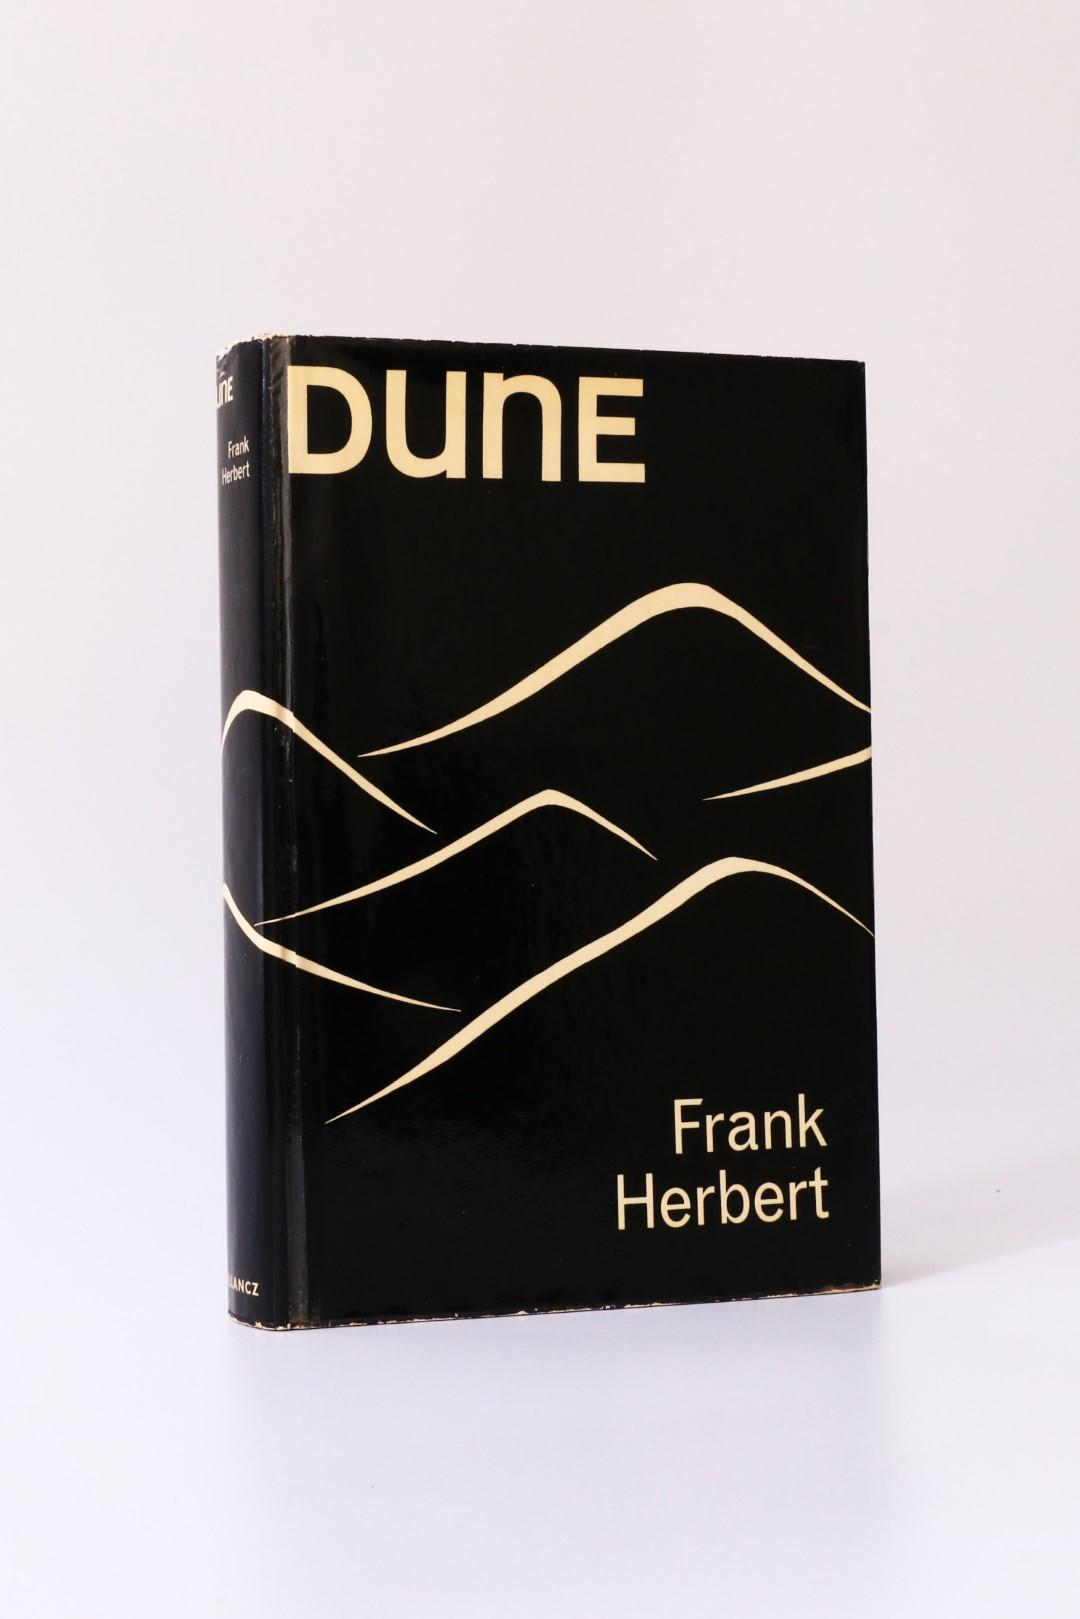 Frank Herbert - Dune - Gollancz, 1965, First Edition.